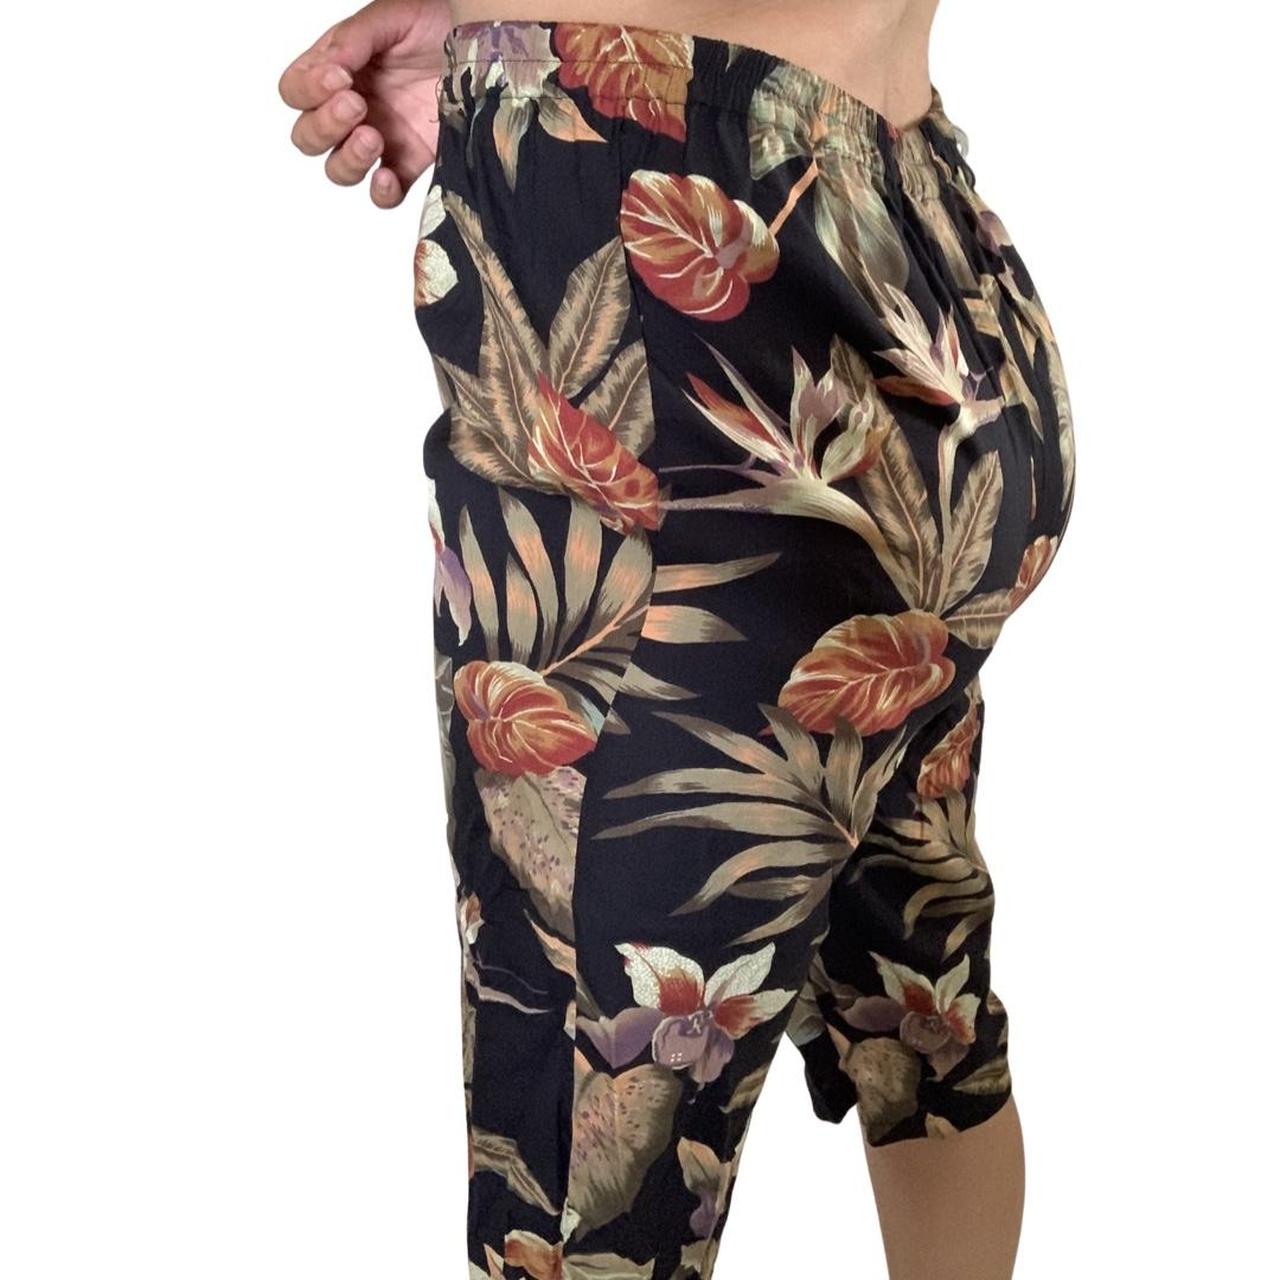 Product Image 2 - Vintage Faith Flower Shorts

Size: no